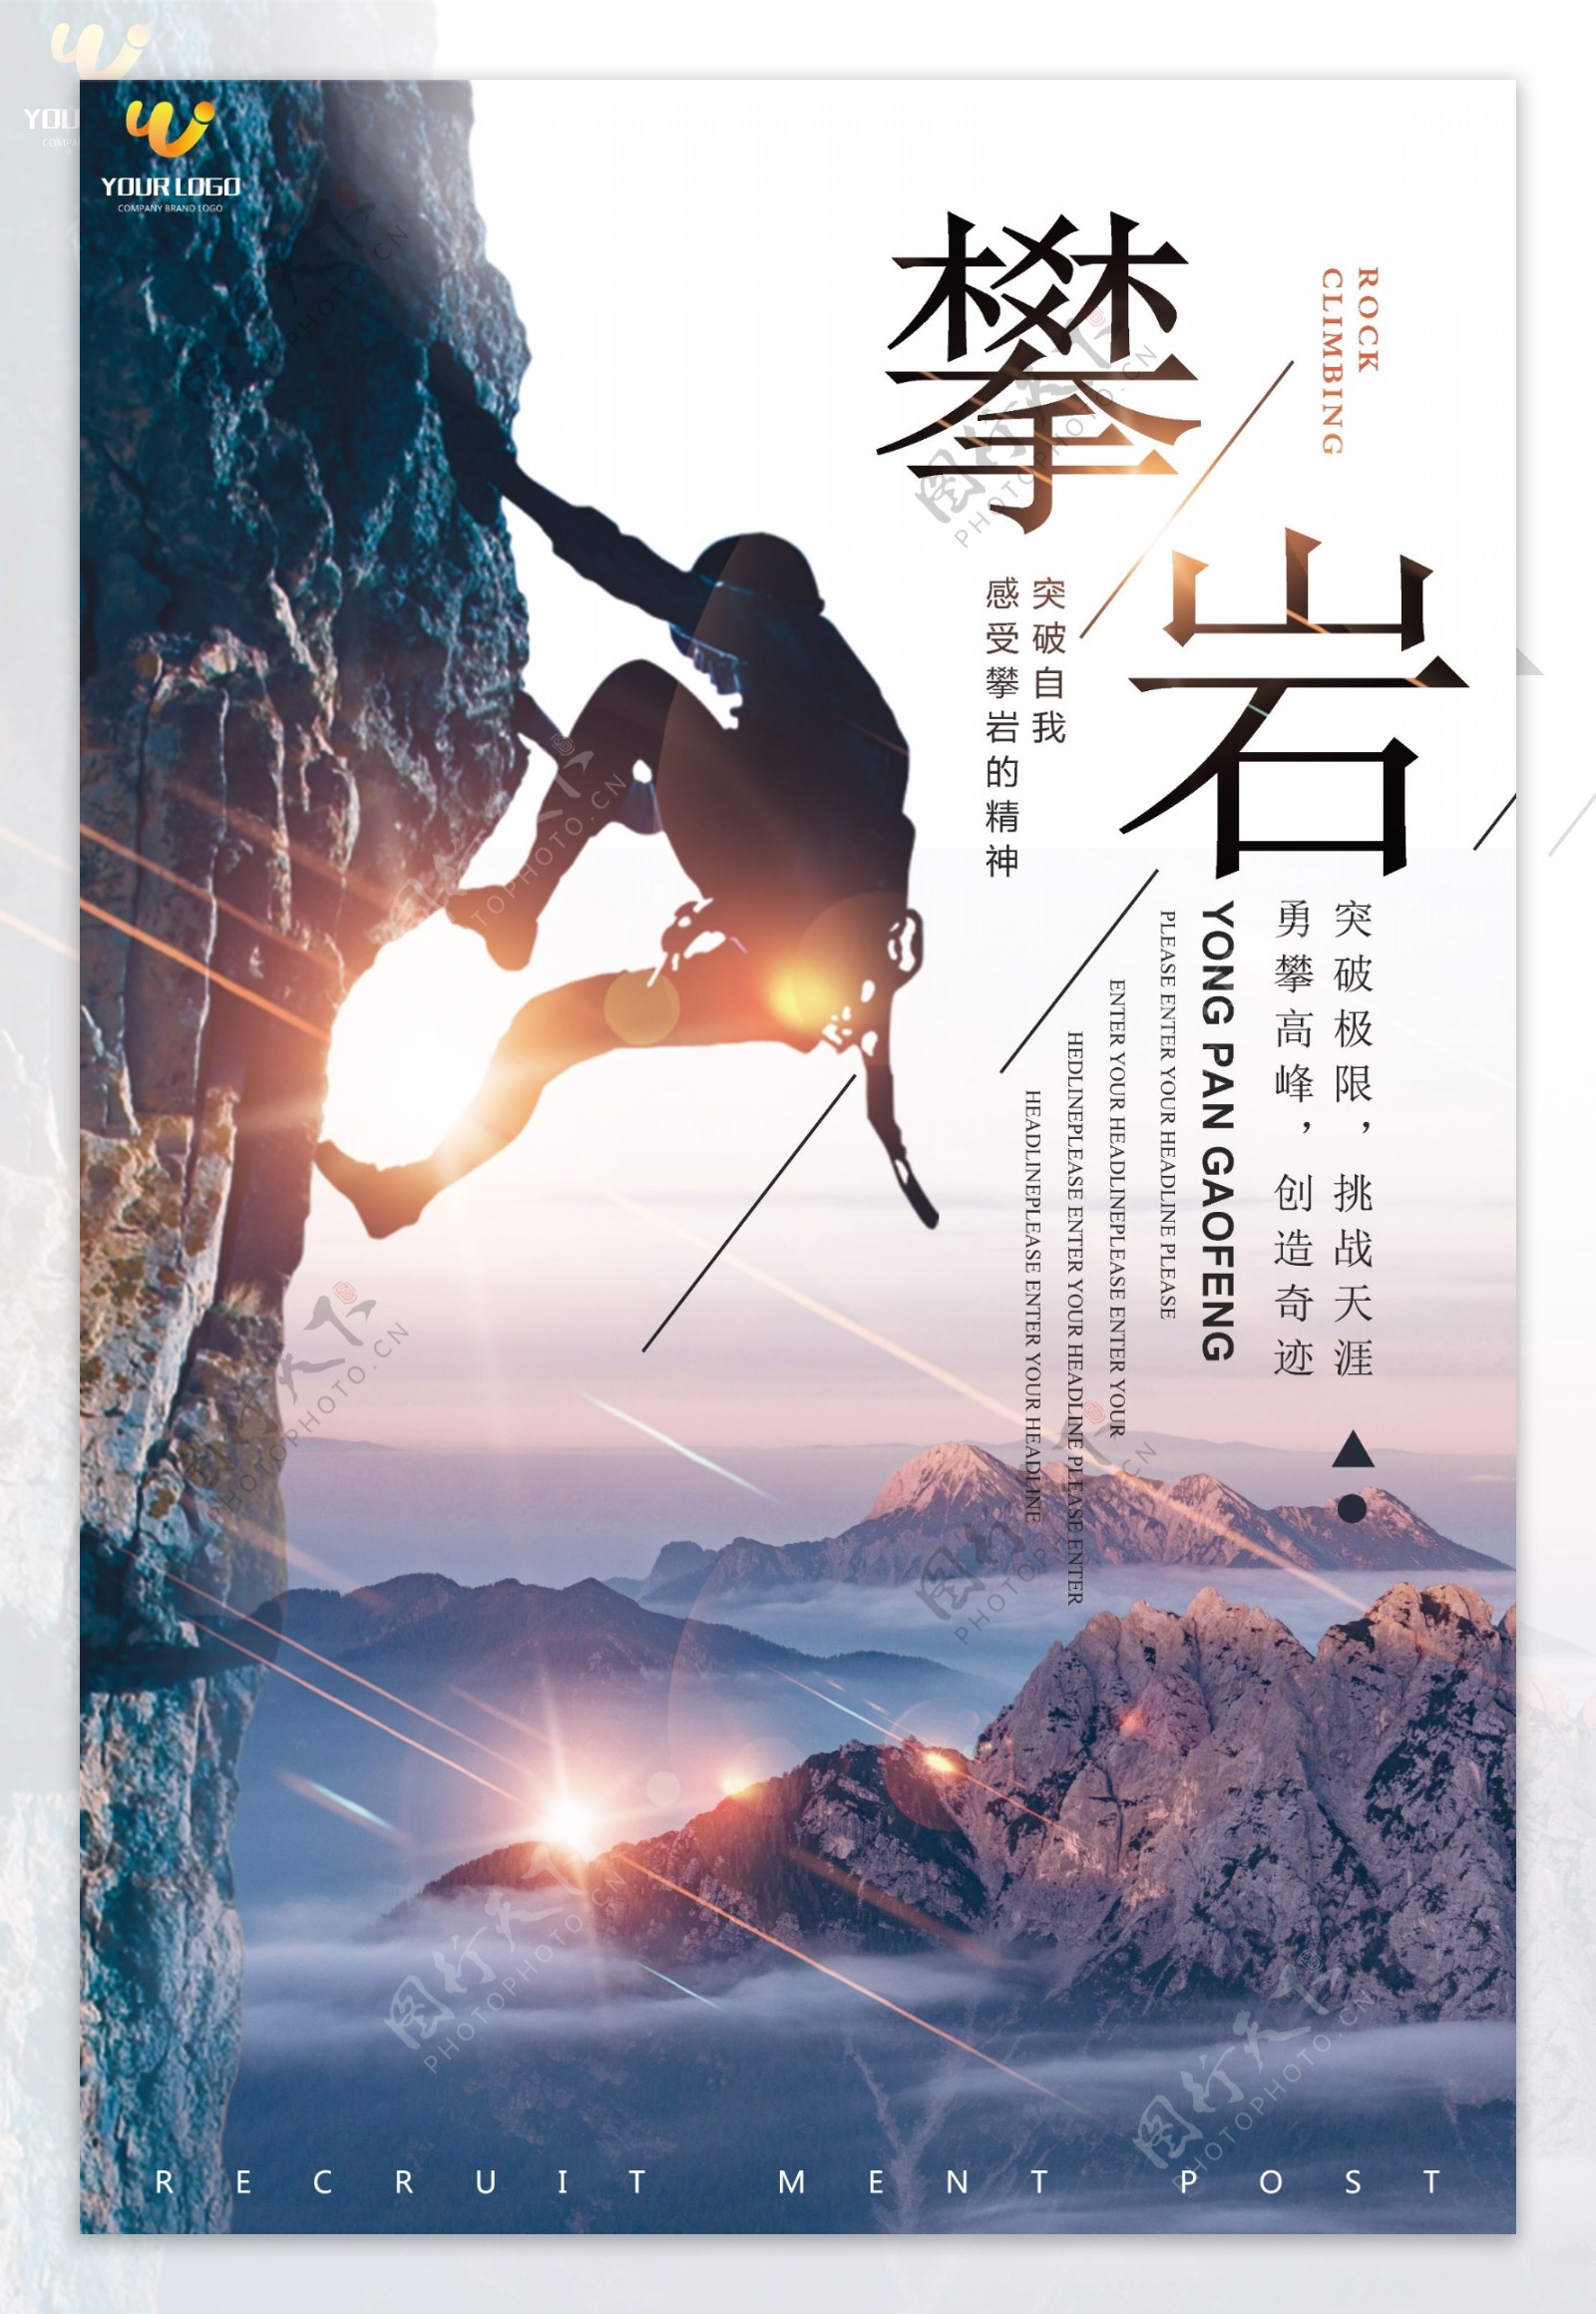 攀岩体育运动海报设计